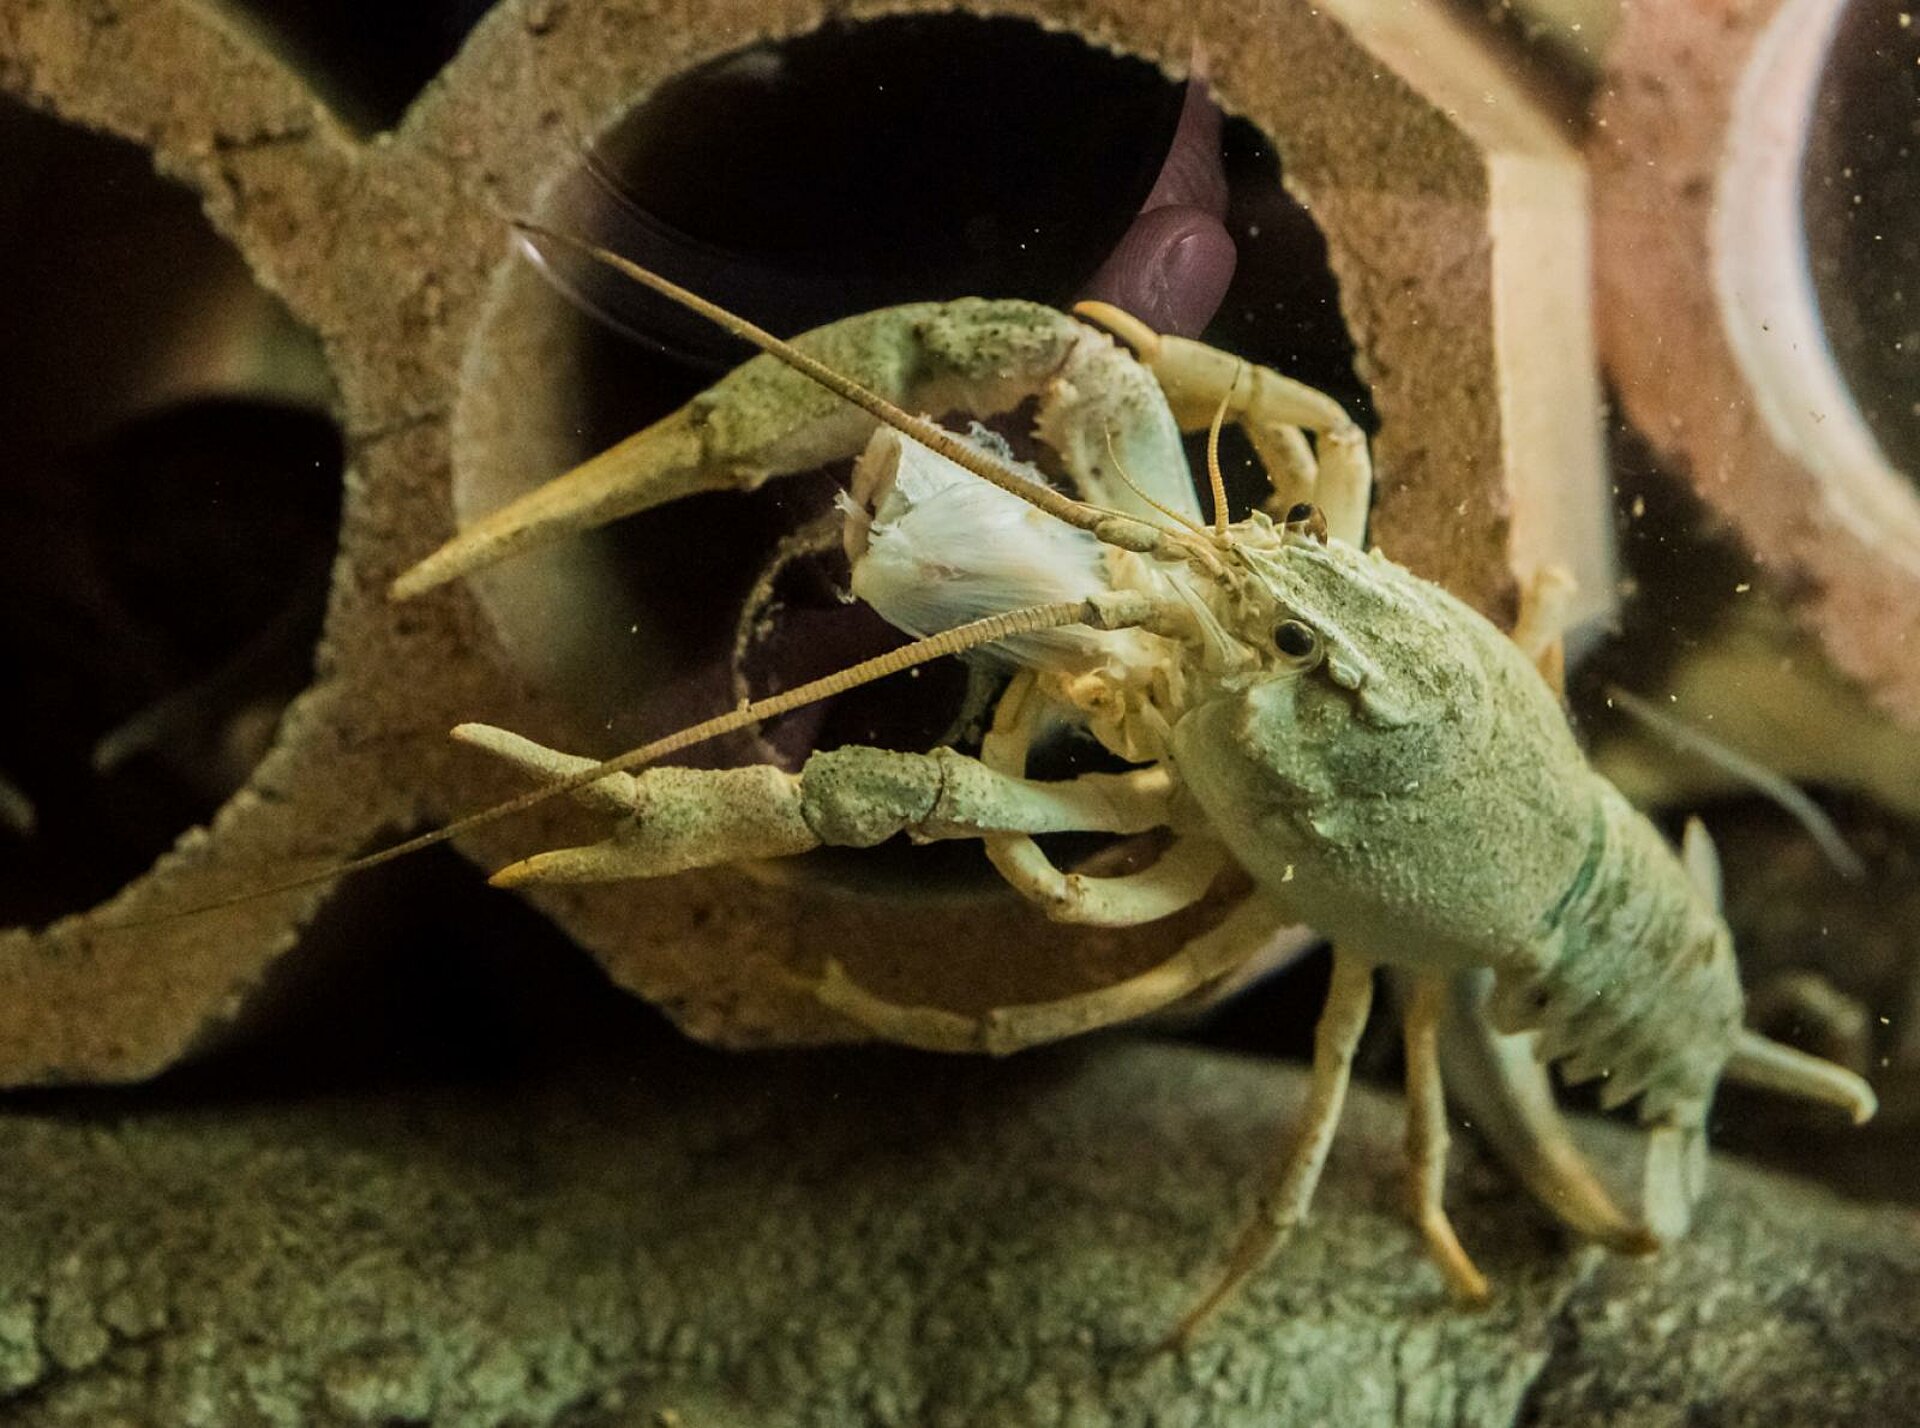 Turkish or narrow-clawed crayfish